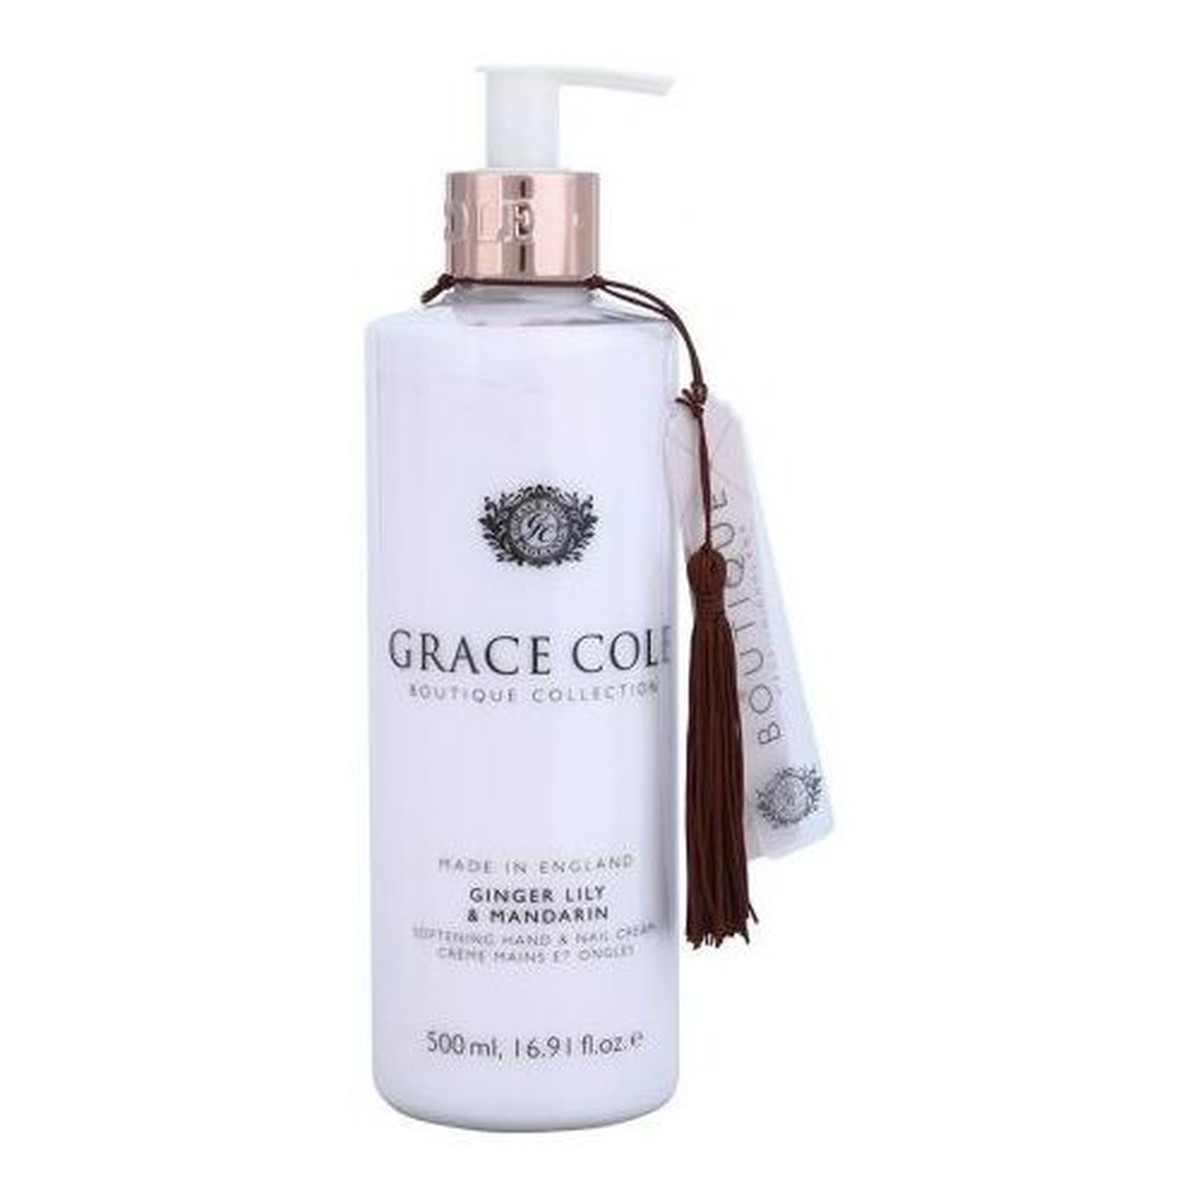 Grace Cole Boutique Hand & Nail Cream Krem do rąk i paznokci Ginger Lily & Mandarin 500ml